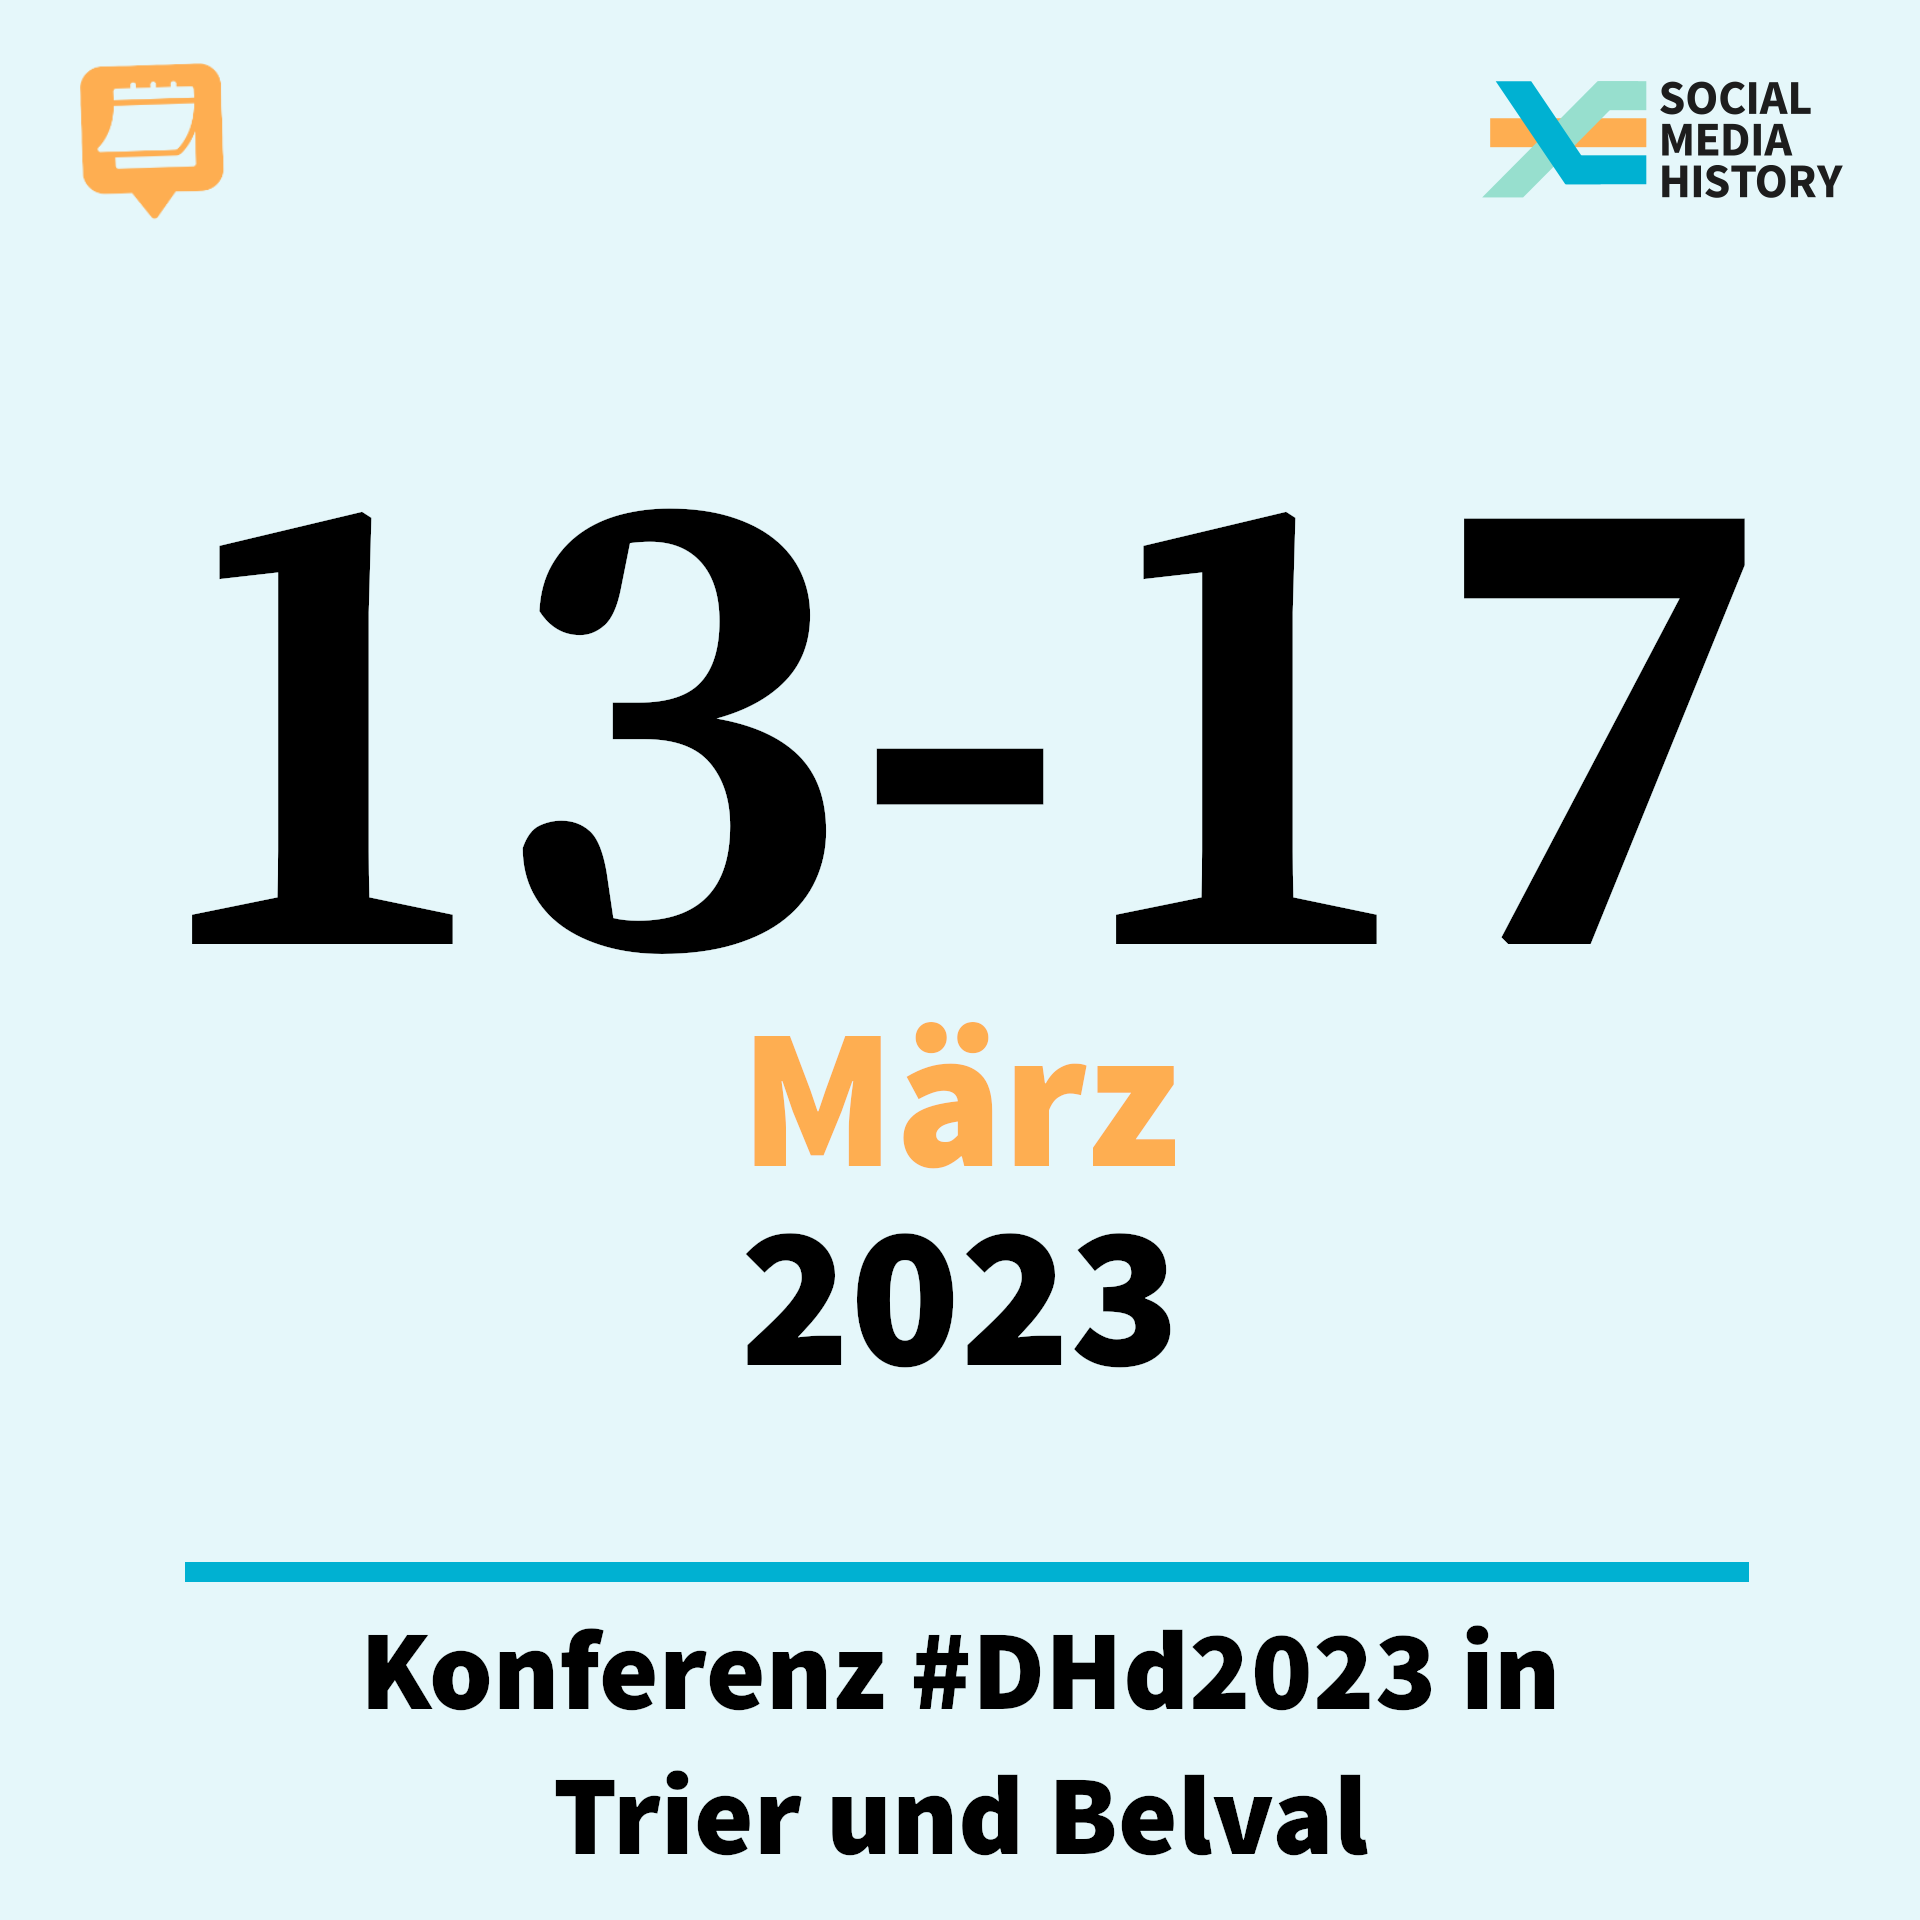 Ankündigung DHd 2023 in Trier und Belval, vom 13. bis zum 17. März.